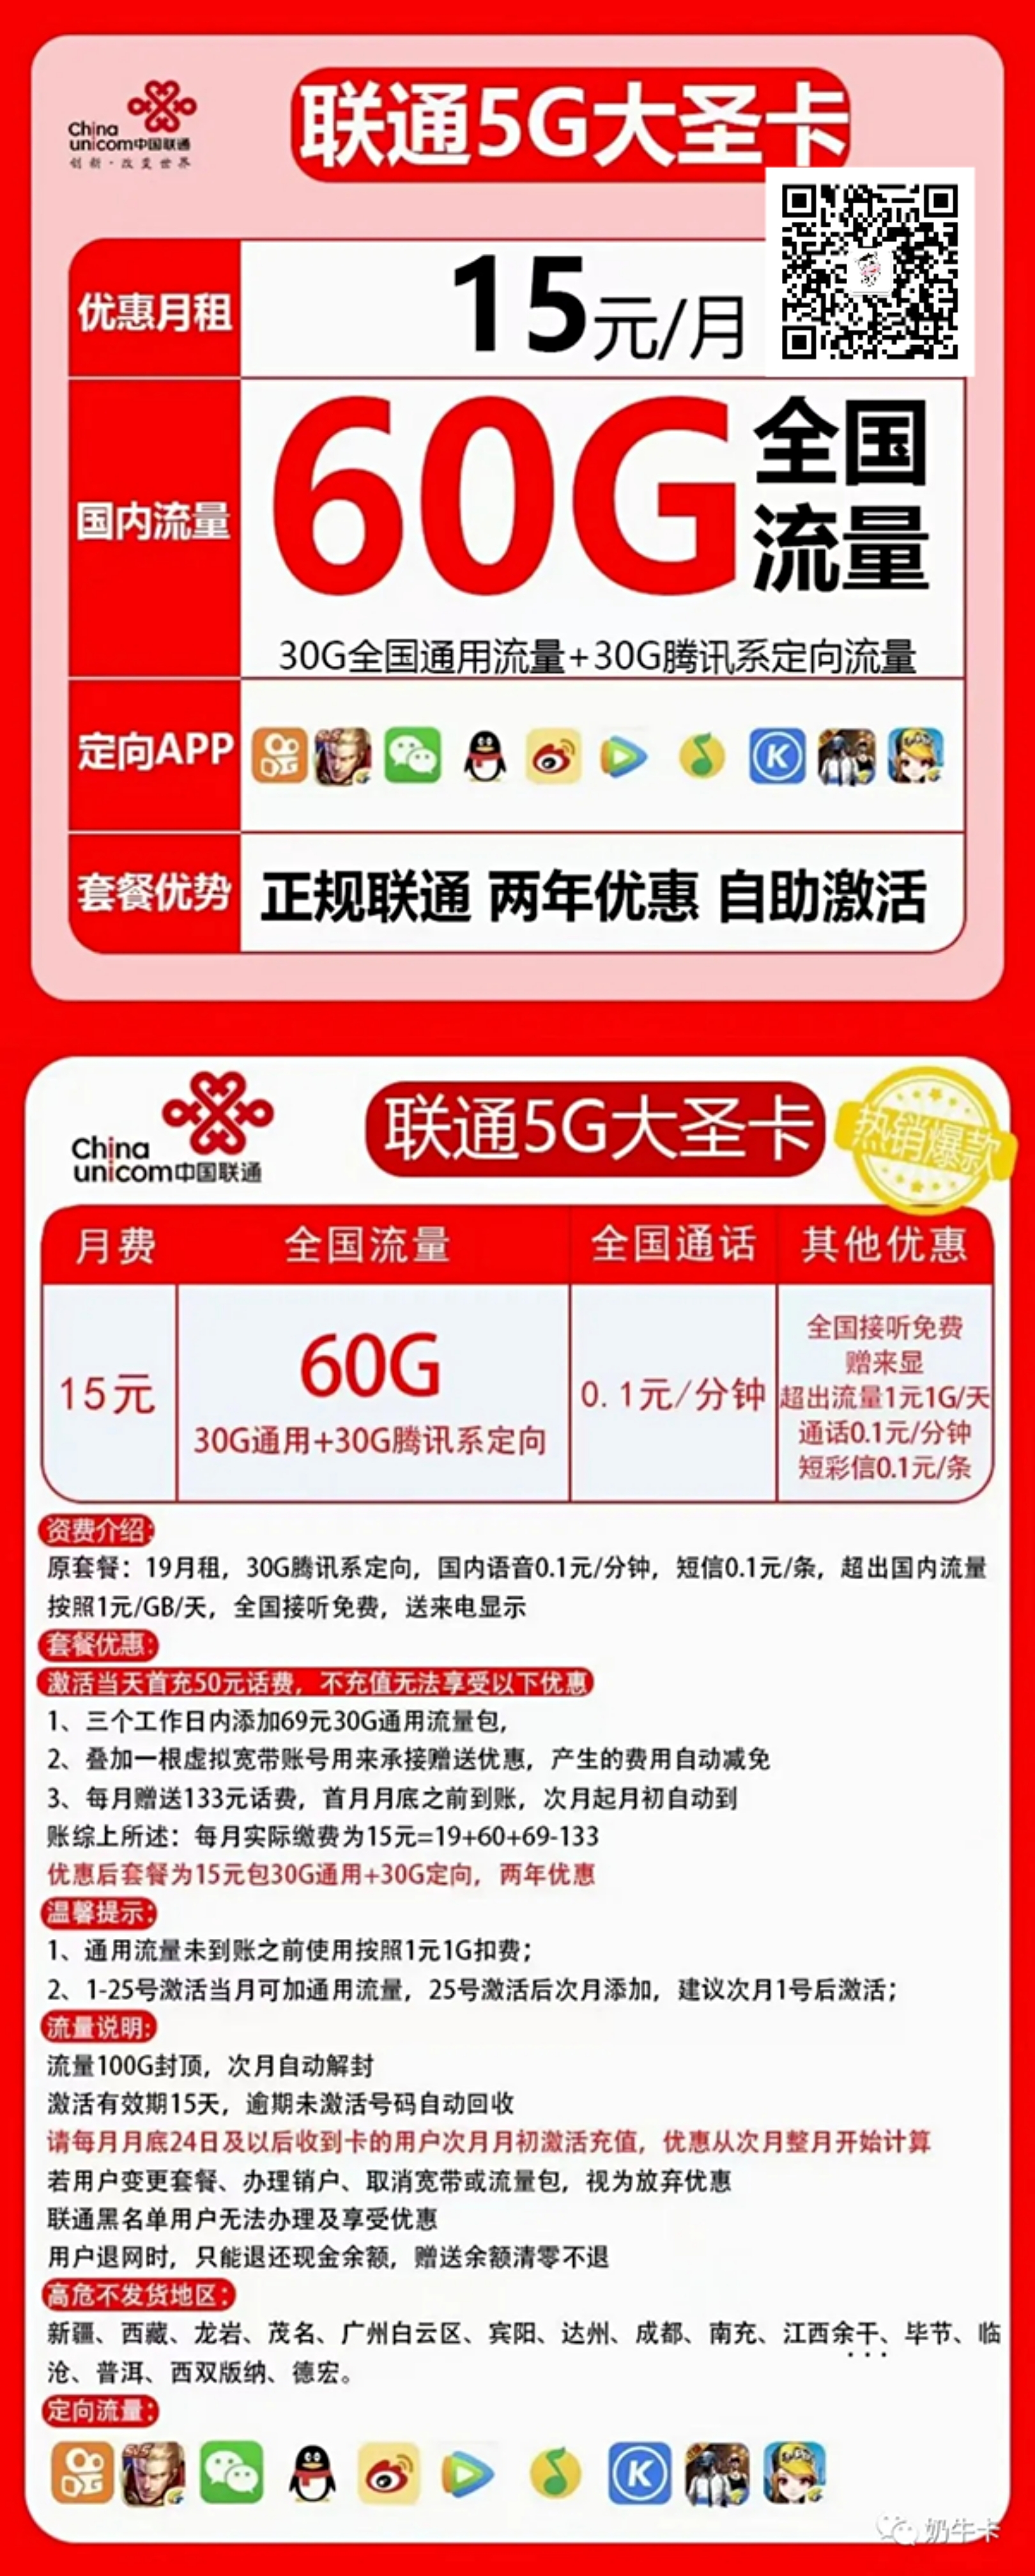 中国联通大宝卡月租88元包30G通用+30G定向+500分钟+2500分钟工作通话 - 中国联通 - 诗雨网络科技有限公司